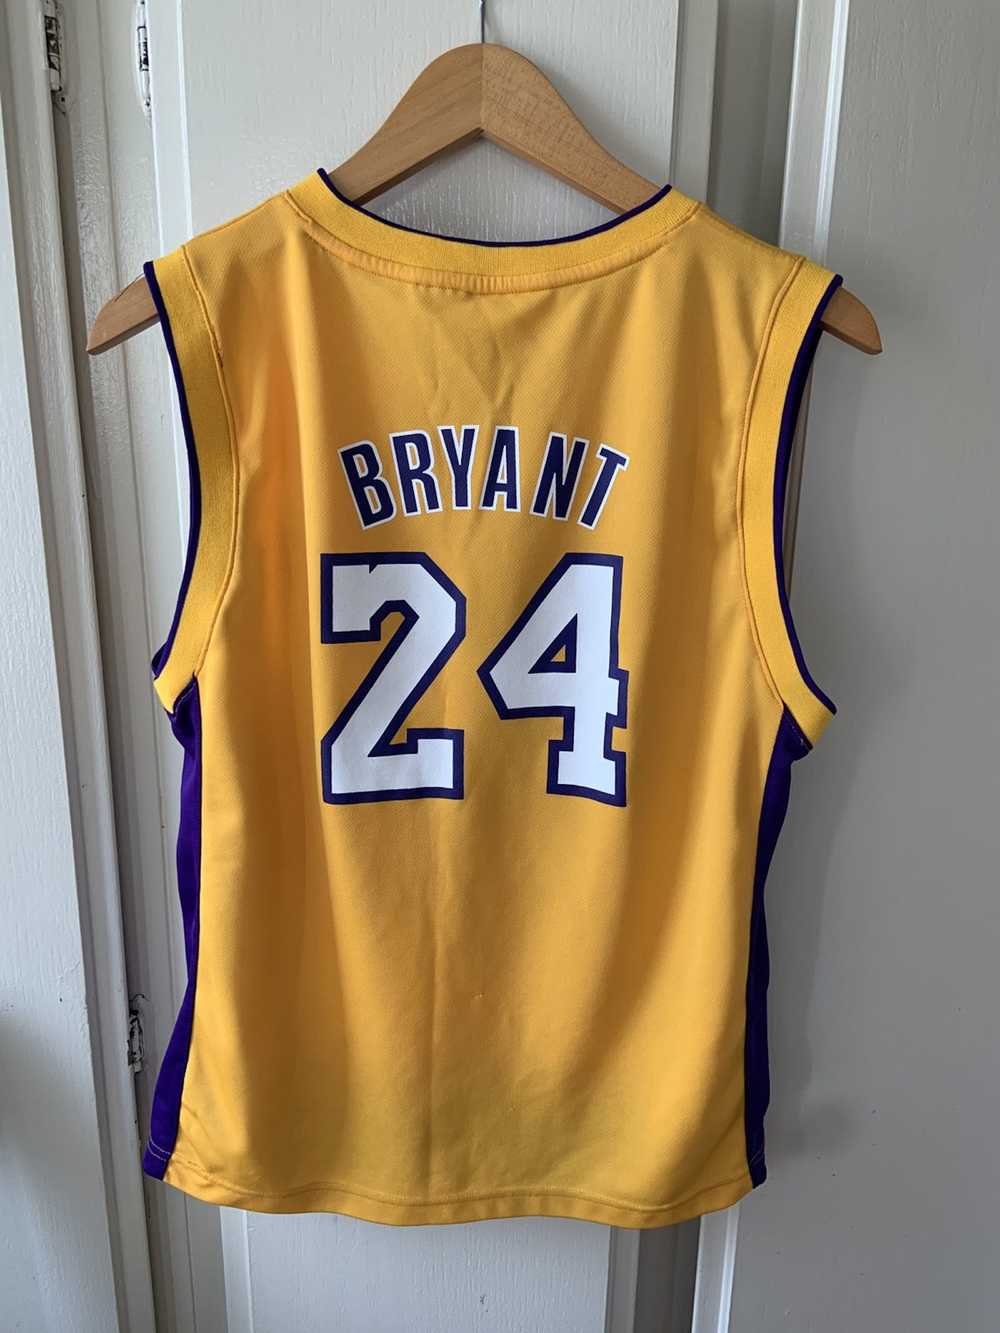 Adidas × NBA Kobe Bryant La Lakers jersey - image 2